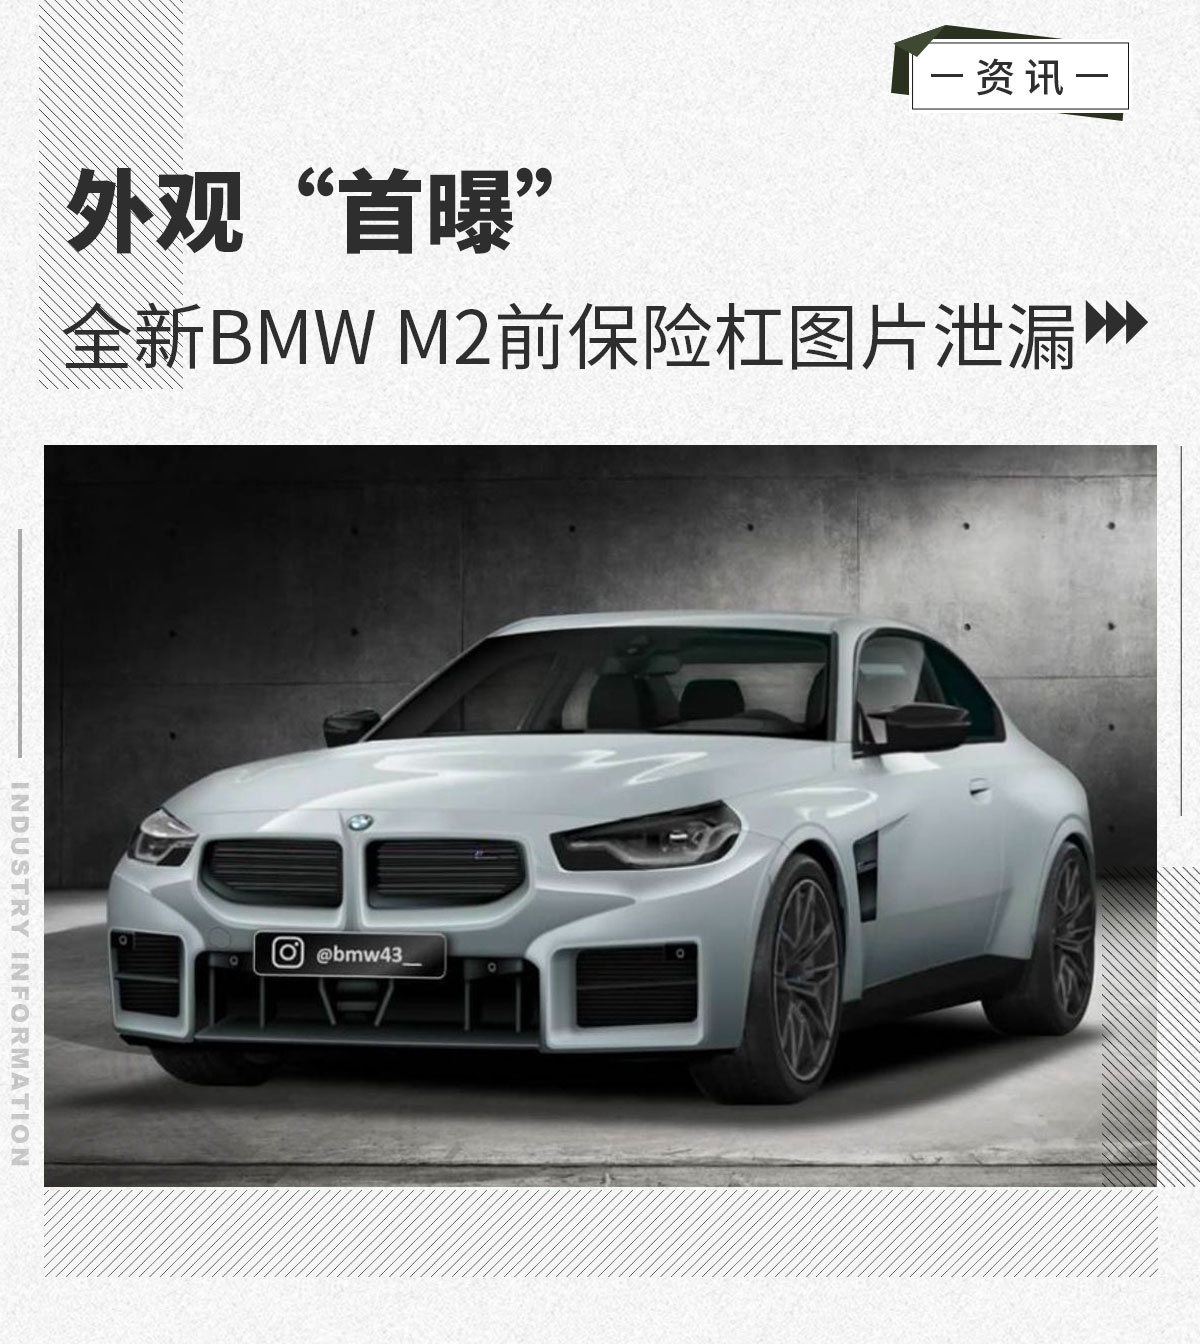 外观“首曝” 全新BMW M2前保险杠图片泄漏